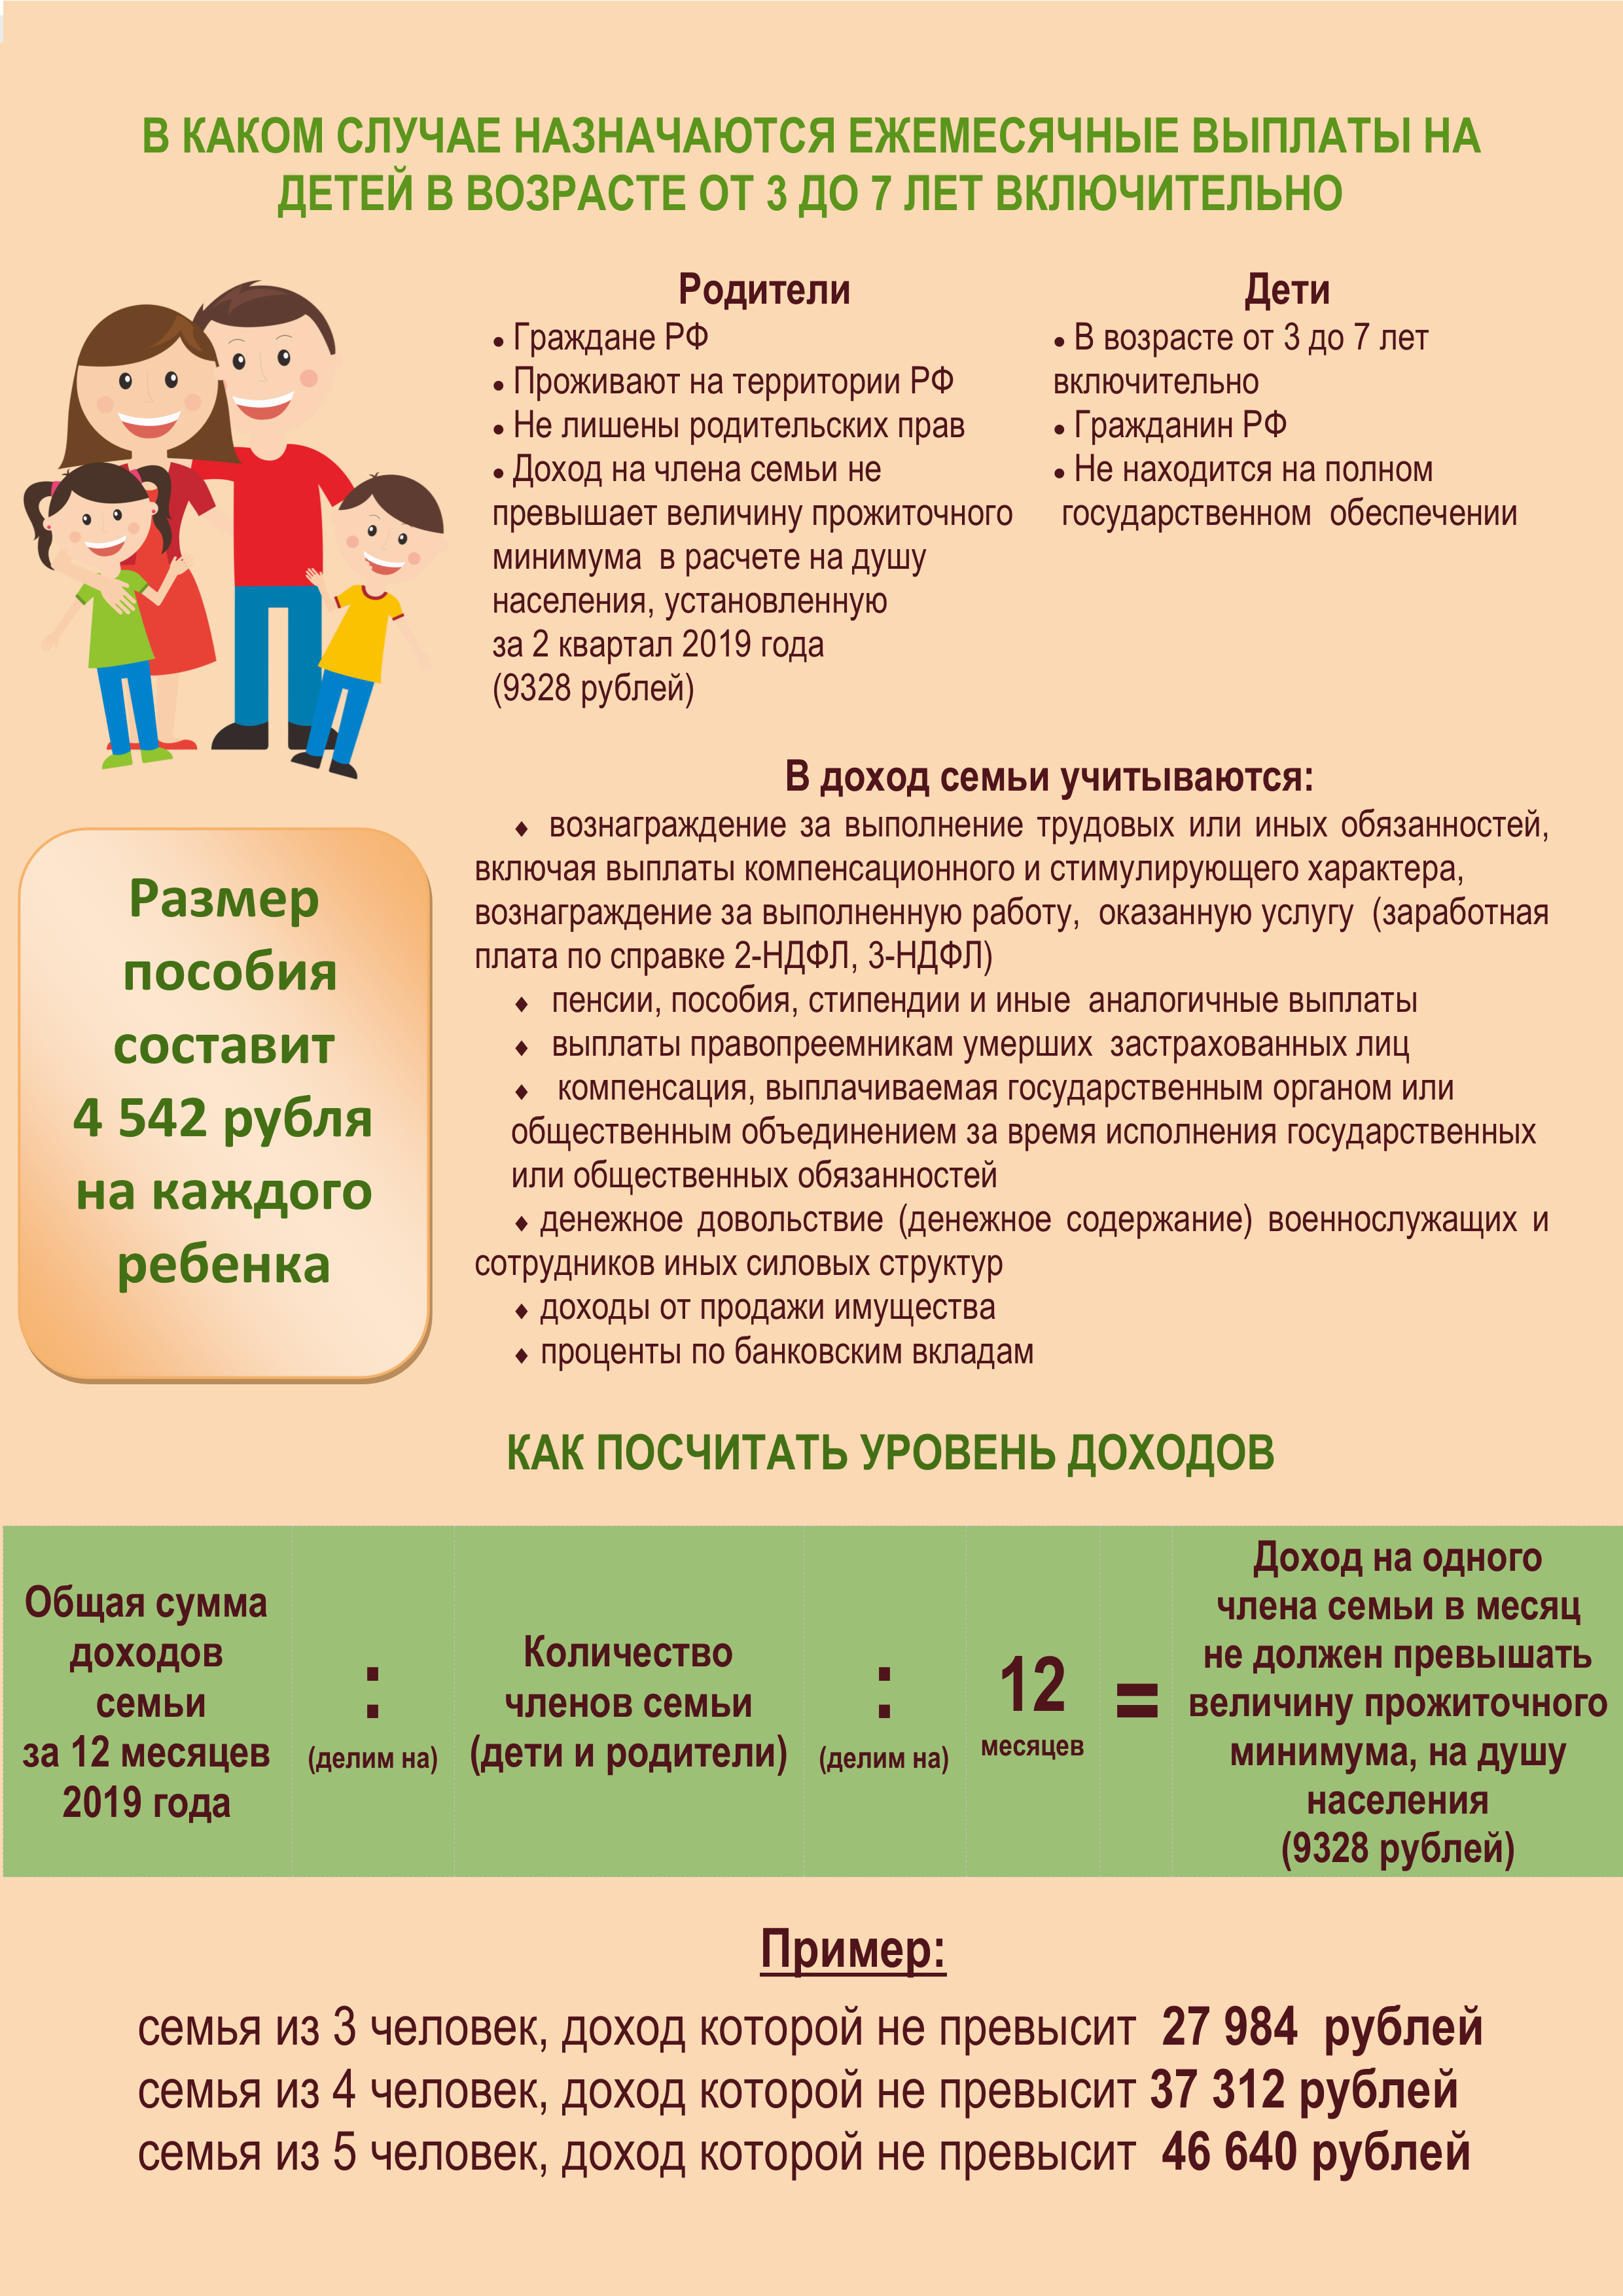 Пособие на двоих детей в России увеличится в 2022 году